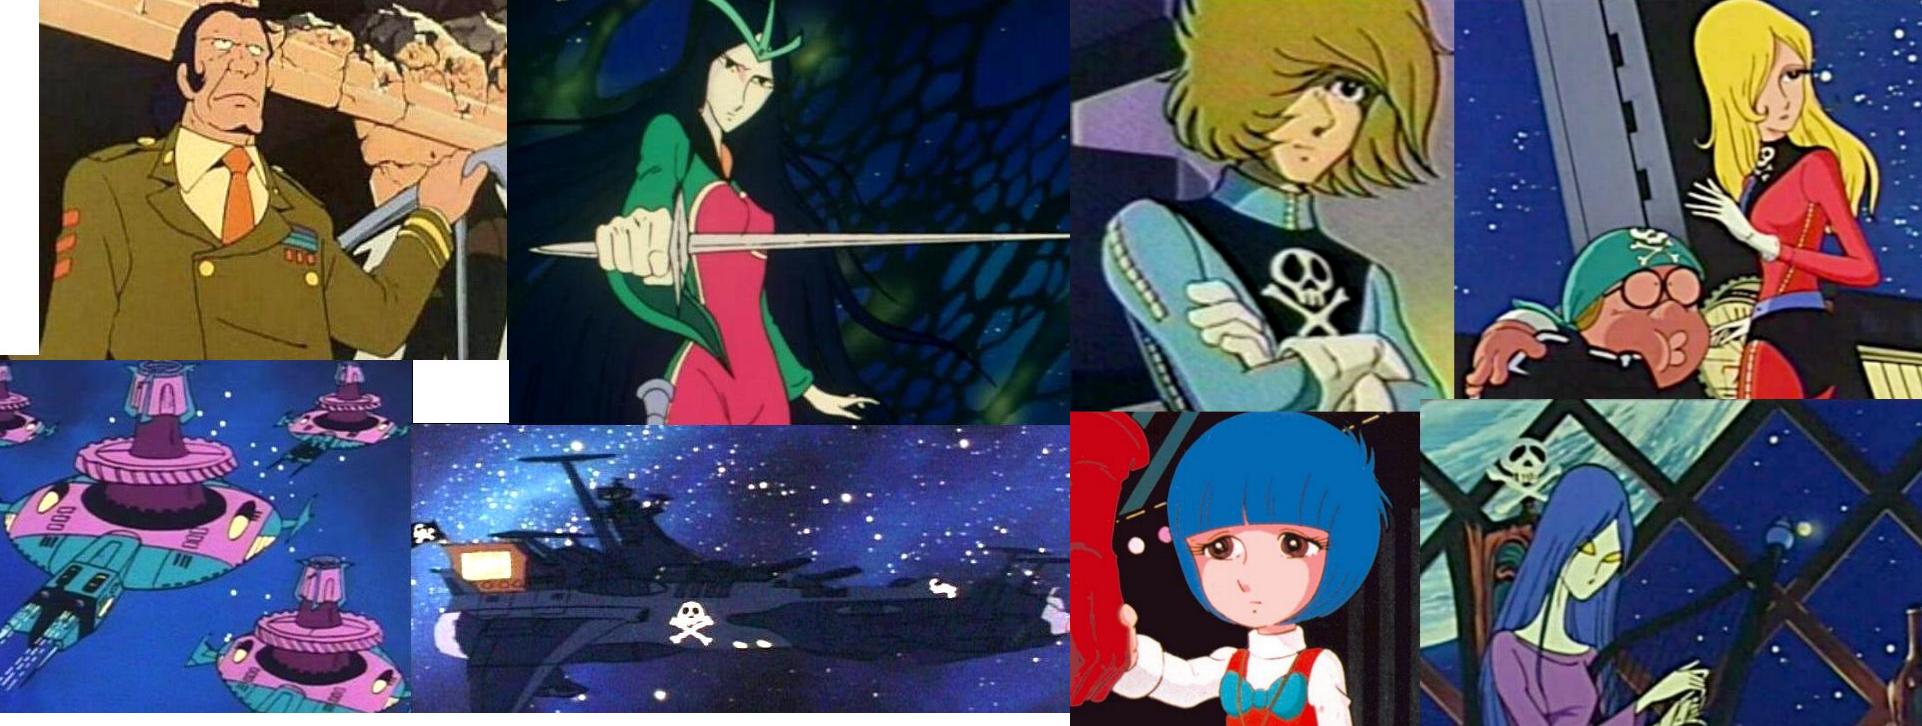 Le serie animate giapponesi in Italia – I primi “anime” in tv (1975